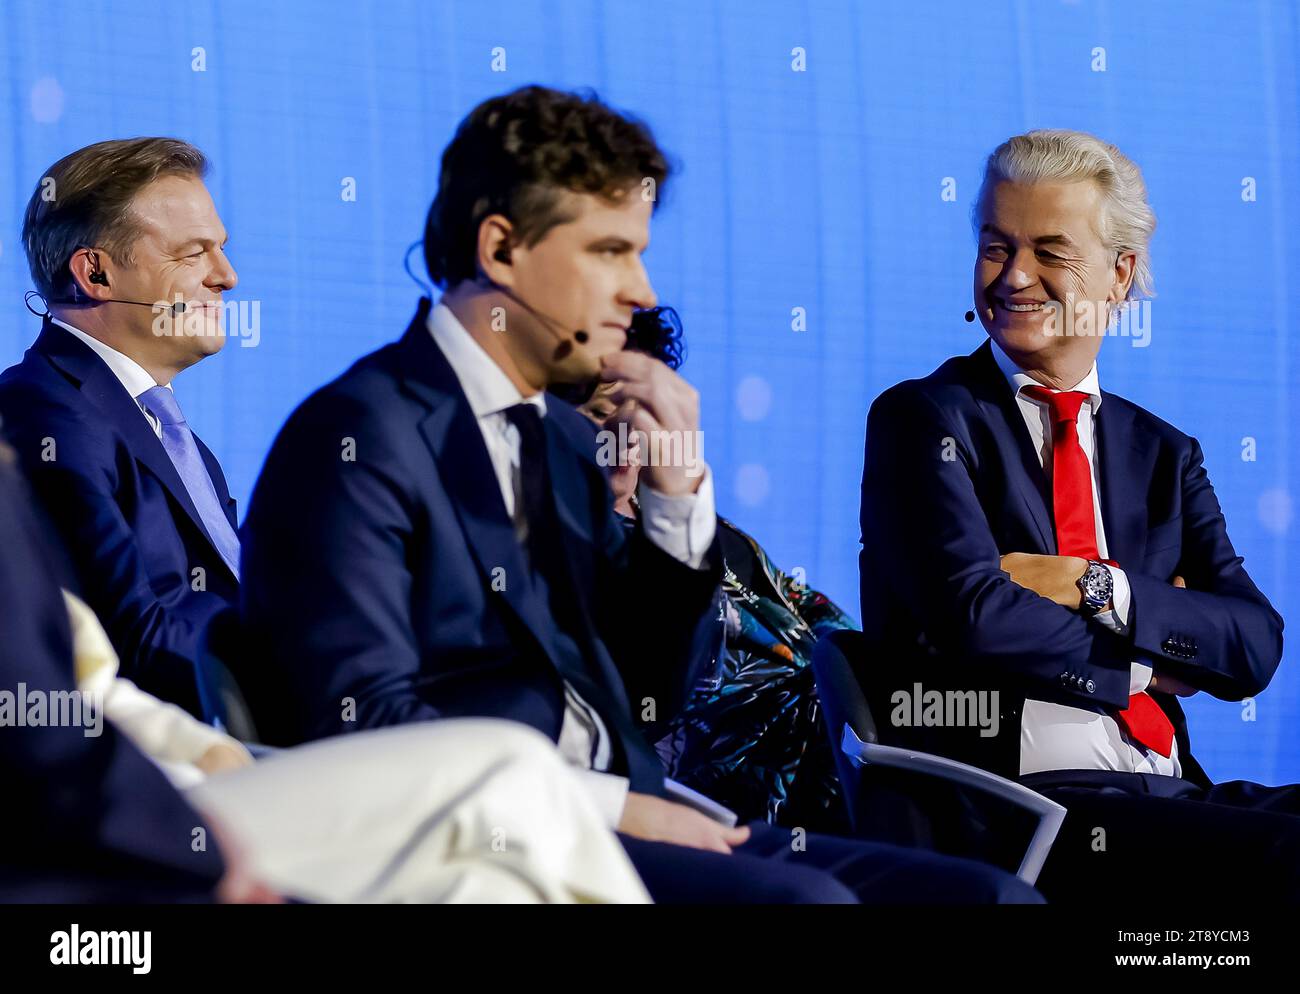 LA HAYE - Pieter Omtzigt (NSC), Henri Bontenbal (CDA) et Geert Wilders (PVV) lors du débat final de la nos, un jour avant les élections à la Chambre des représentants. ANP REMKO DE WAAL netherlands Out - belgique Out Banque D'Images